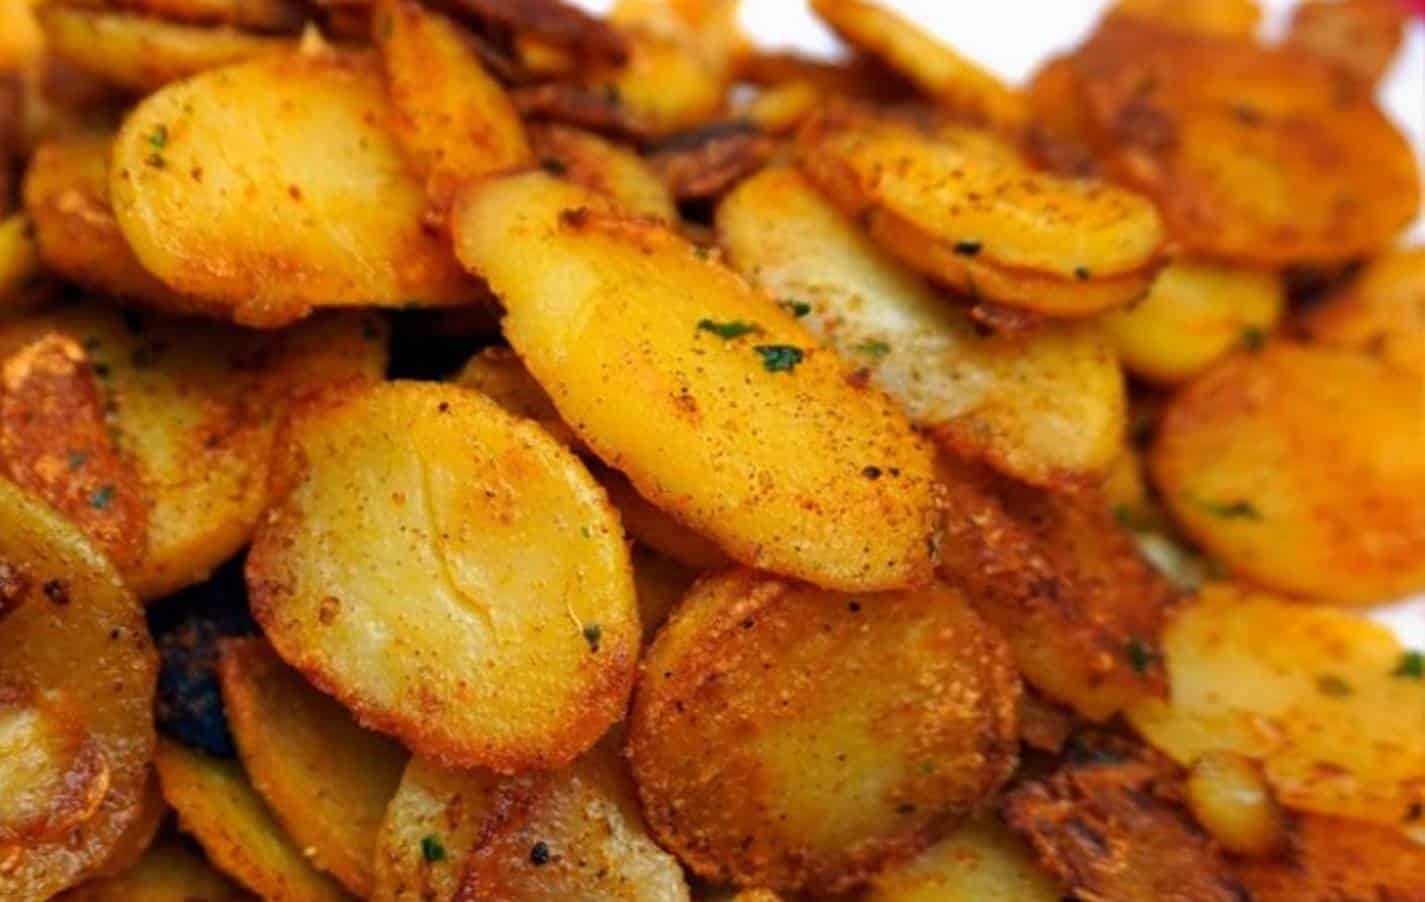 Prepare deliciosas batatas com alho dourado, fácil e rápido com apenas 4 ingredientes